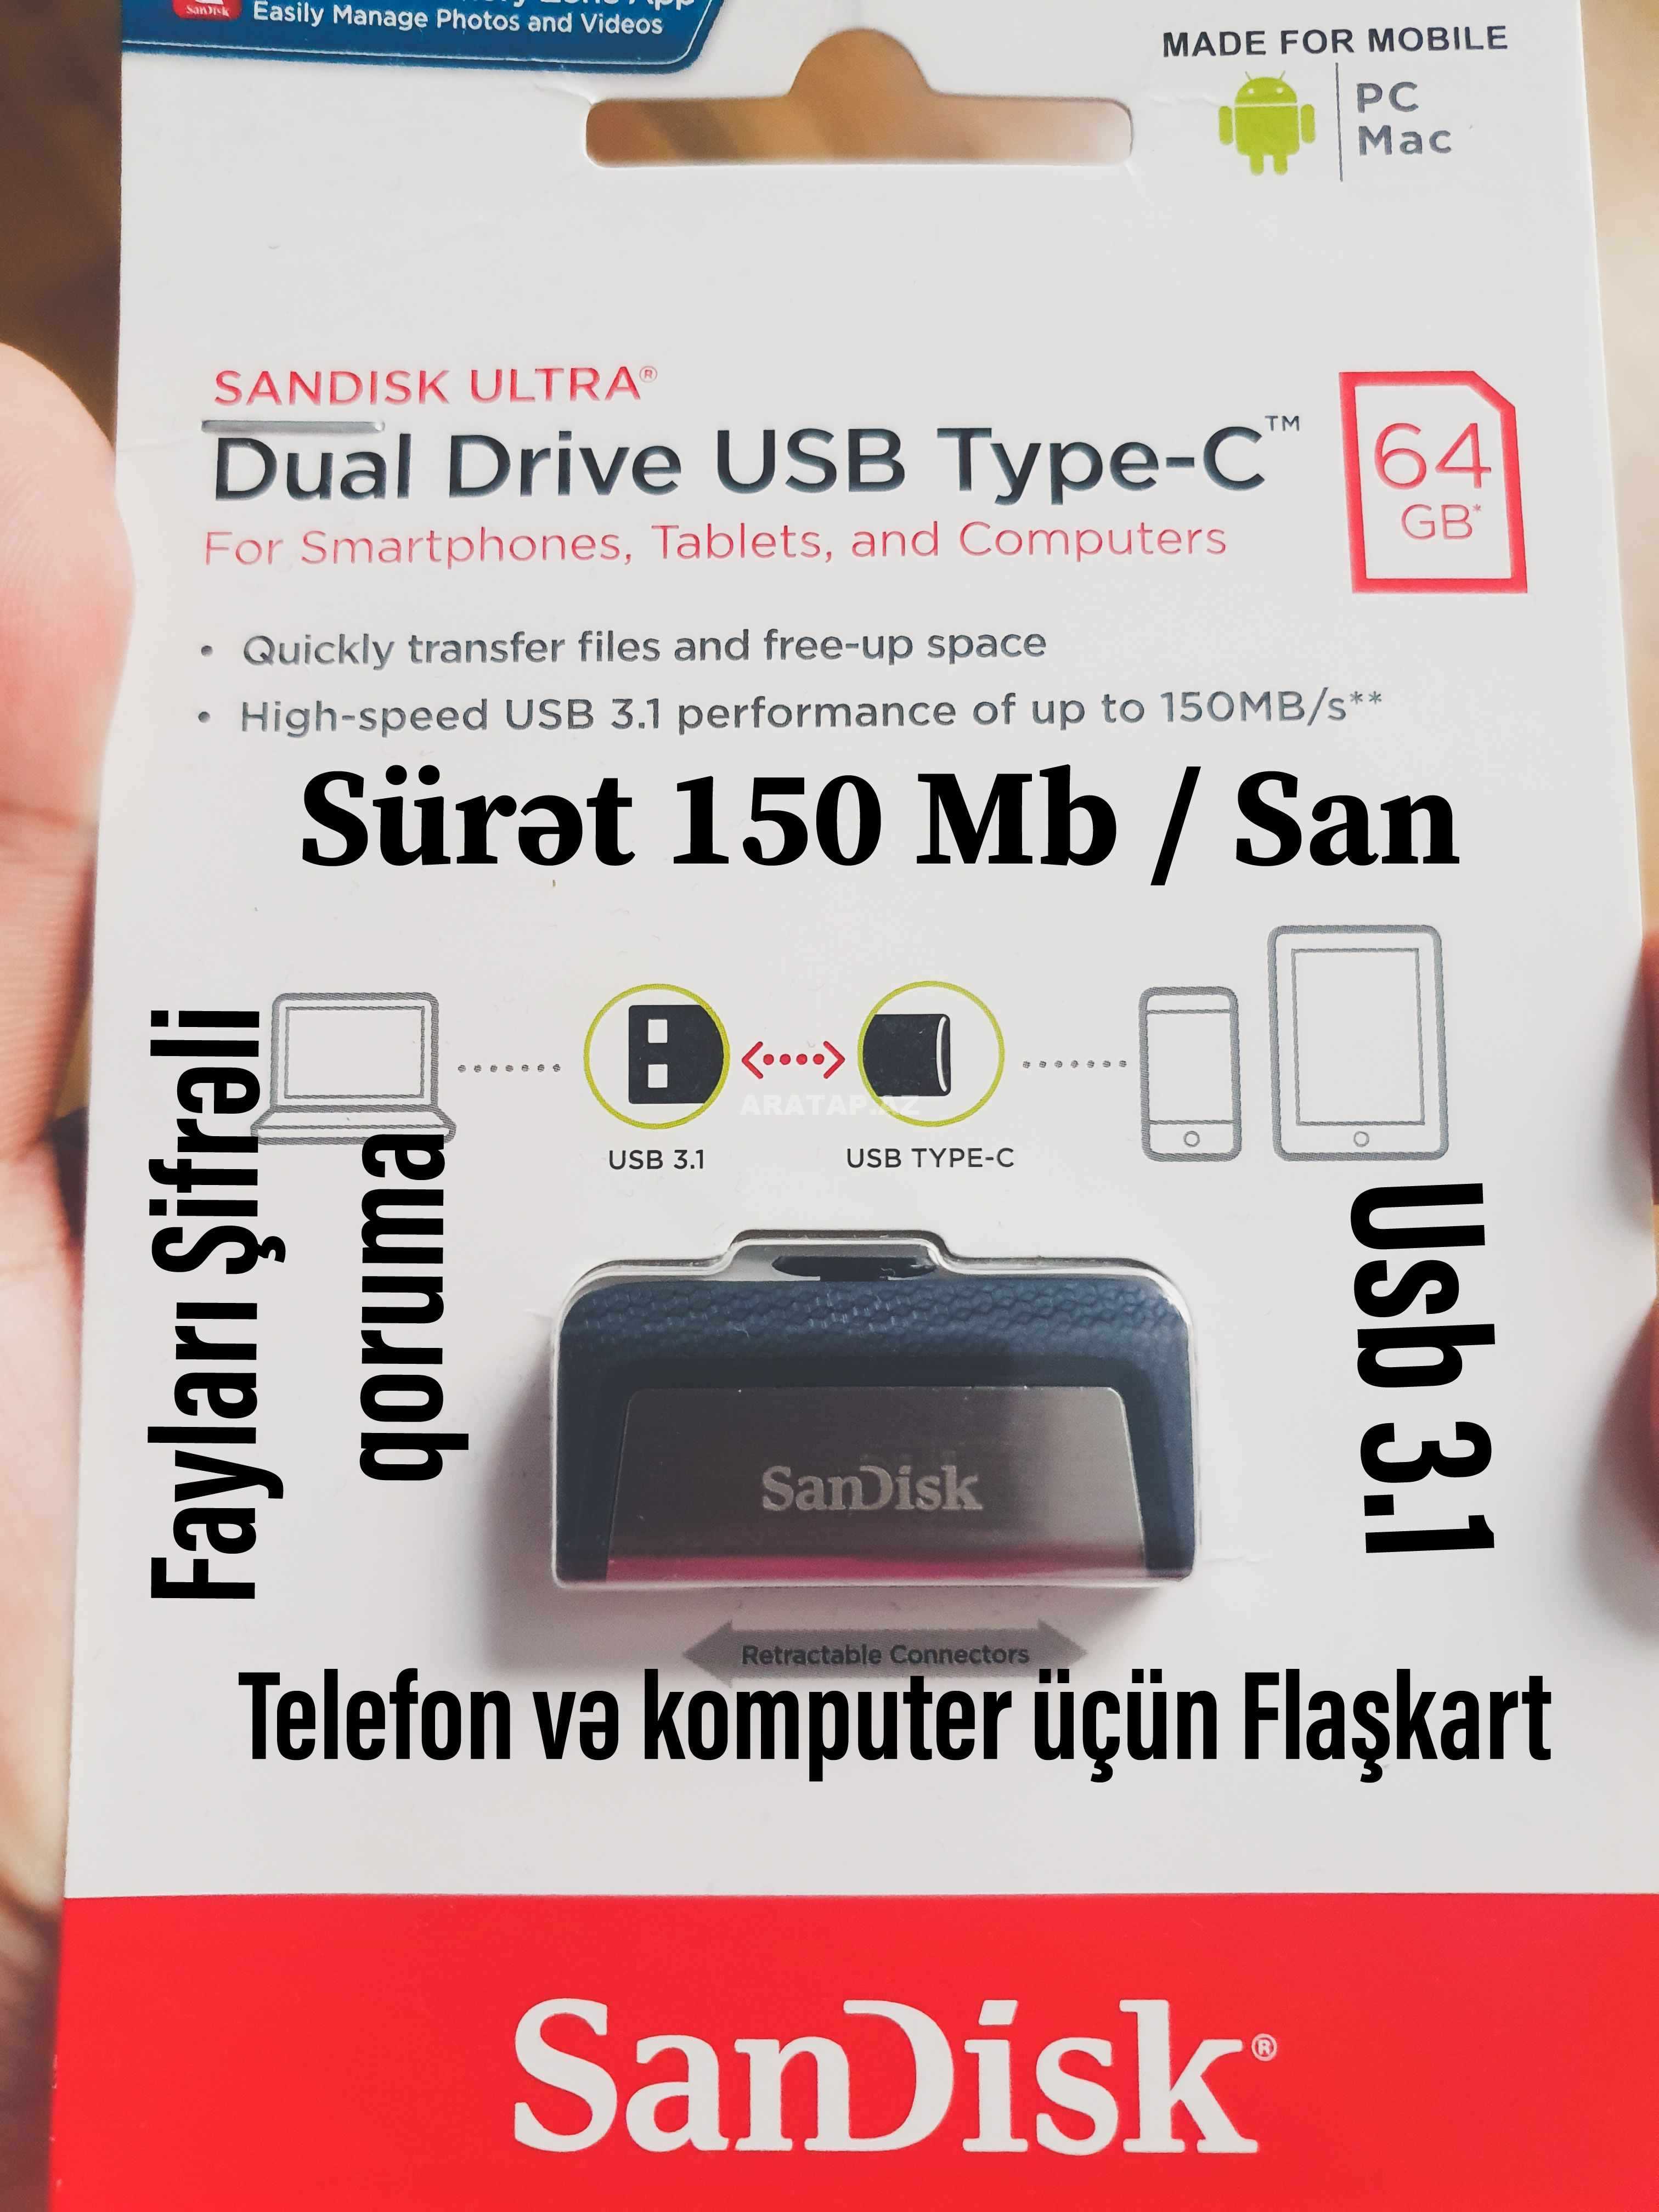 Sandisk 64 Gb Type C Ultra dual Flaşkart Usb 3.1